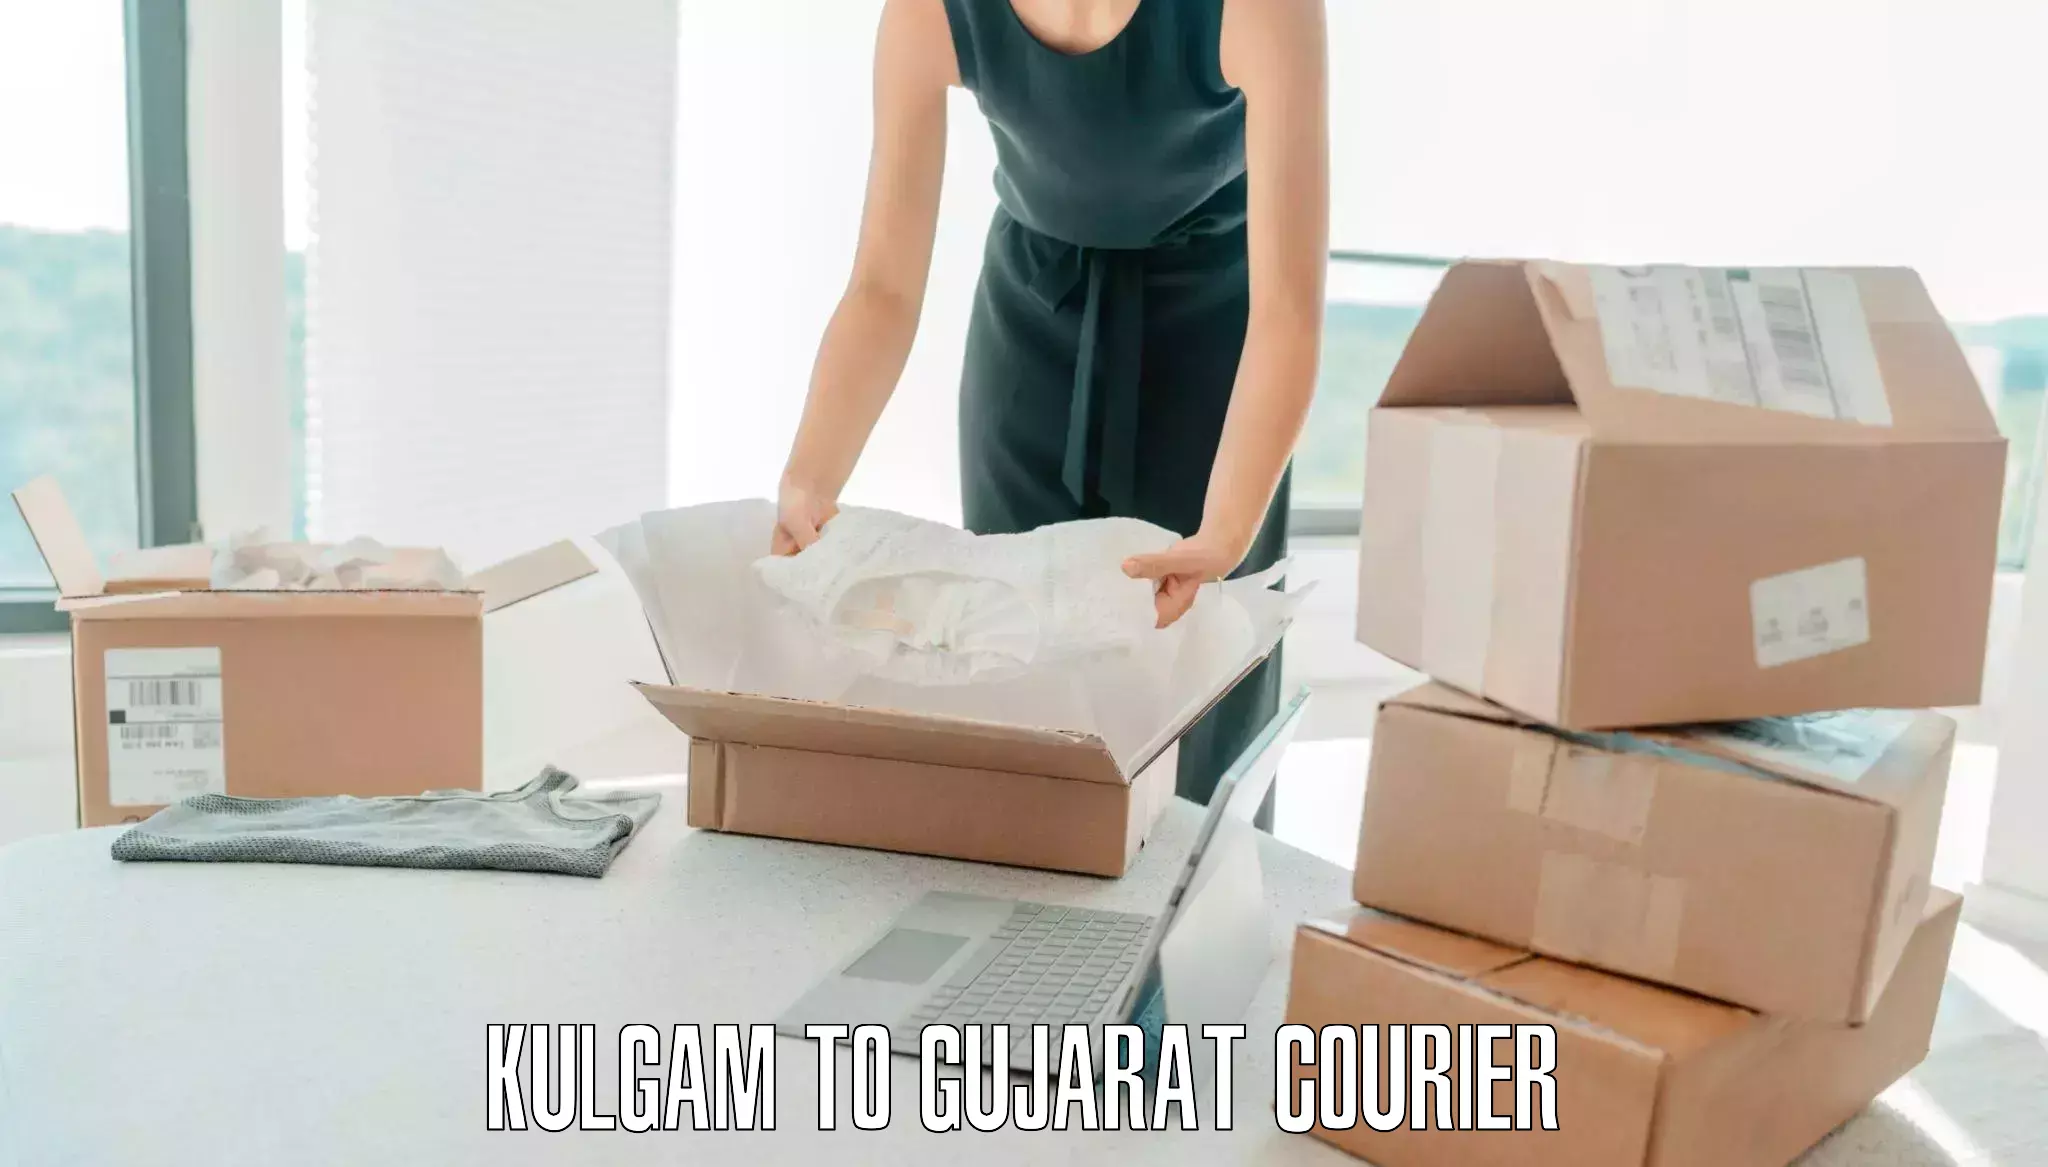 Luggage delivery optimization Kulgam to IIIT Surat